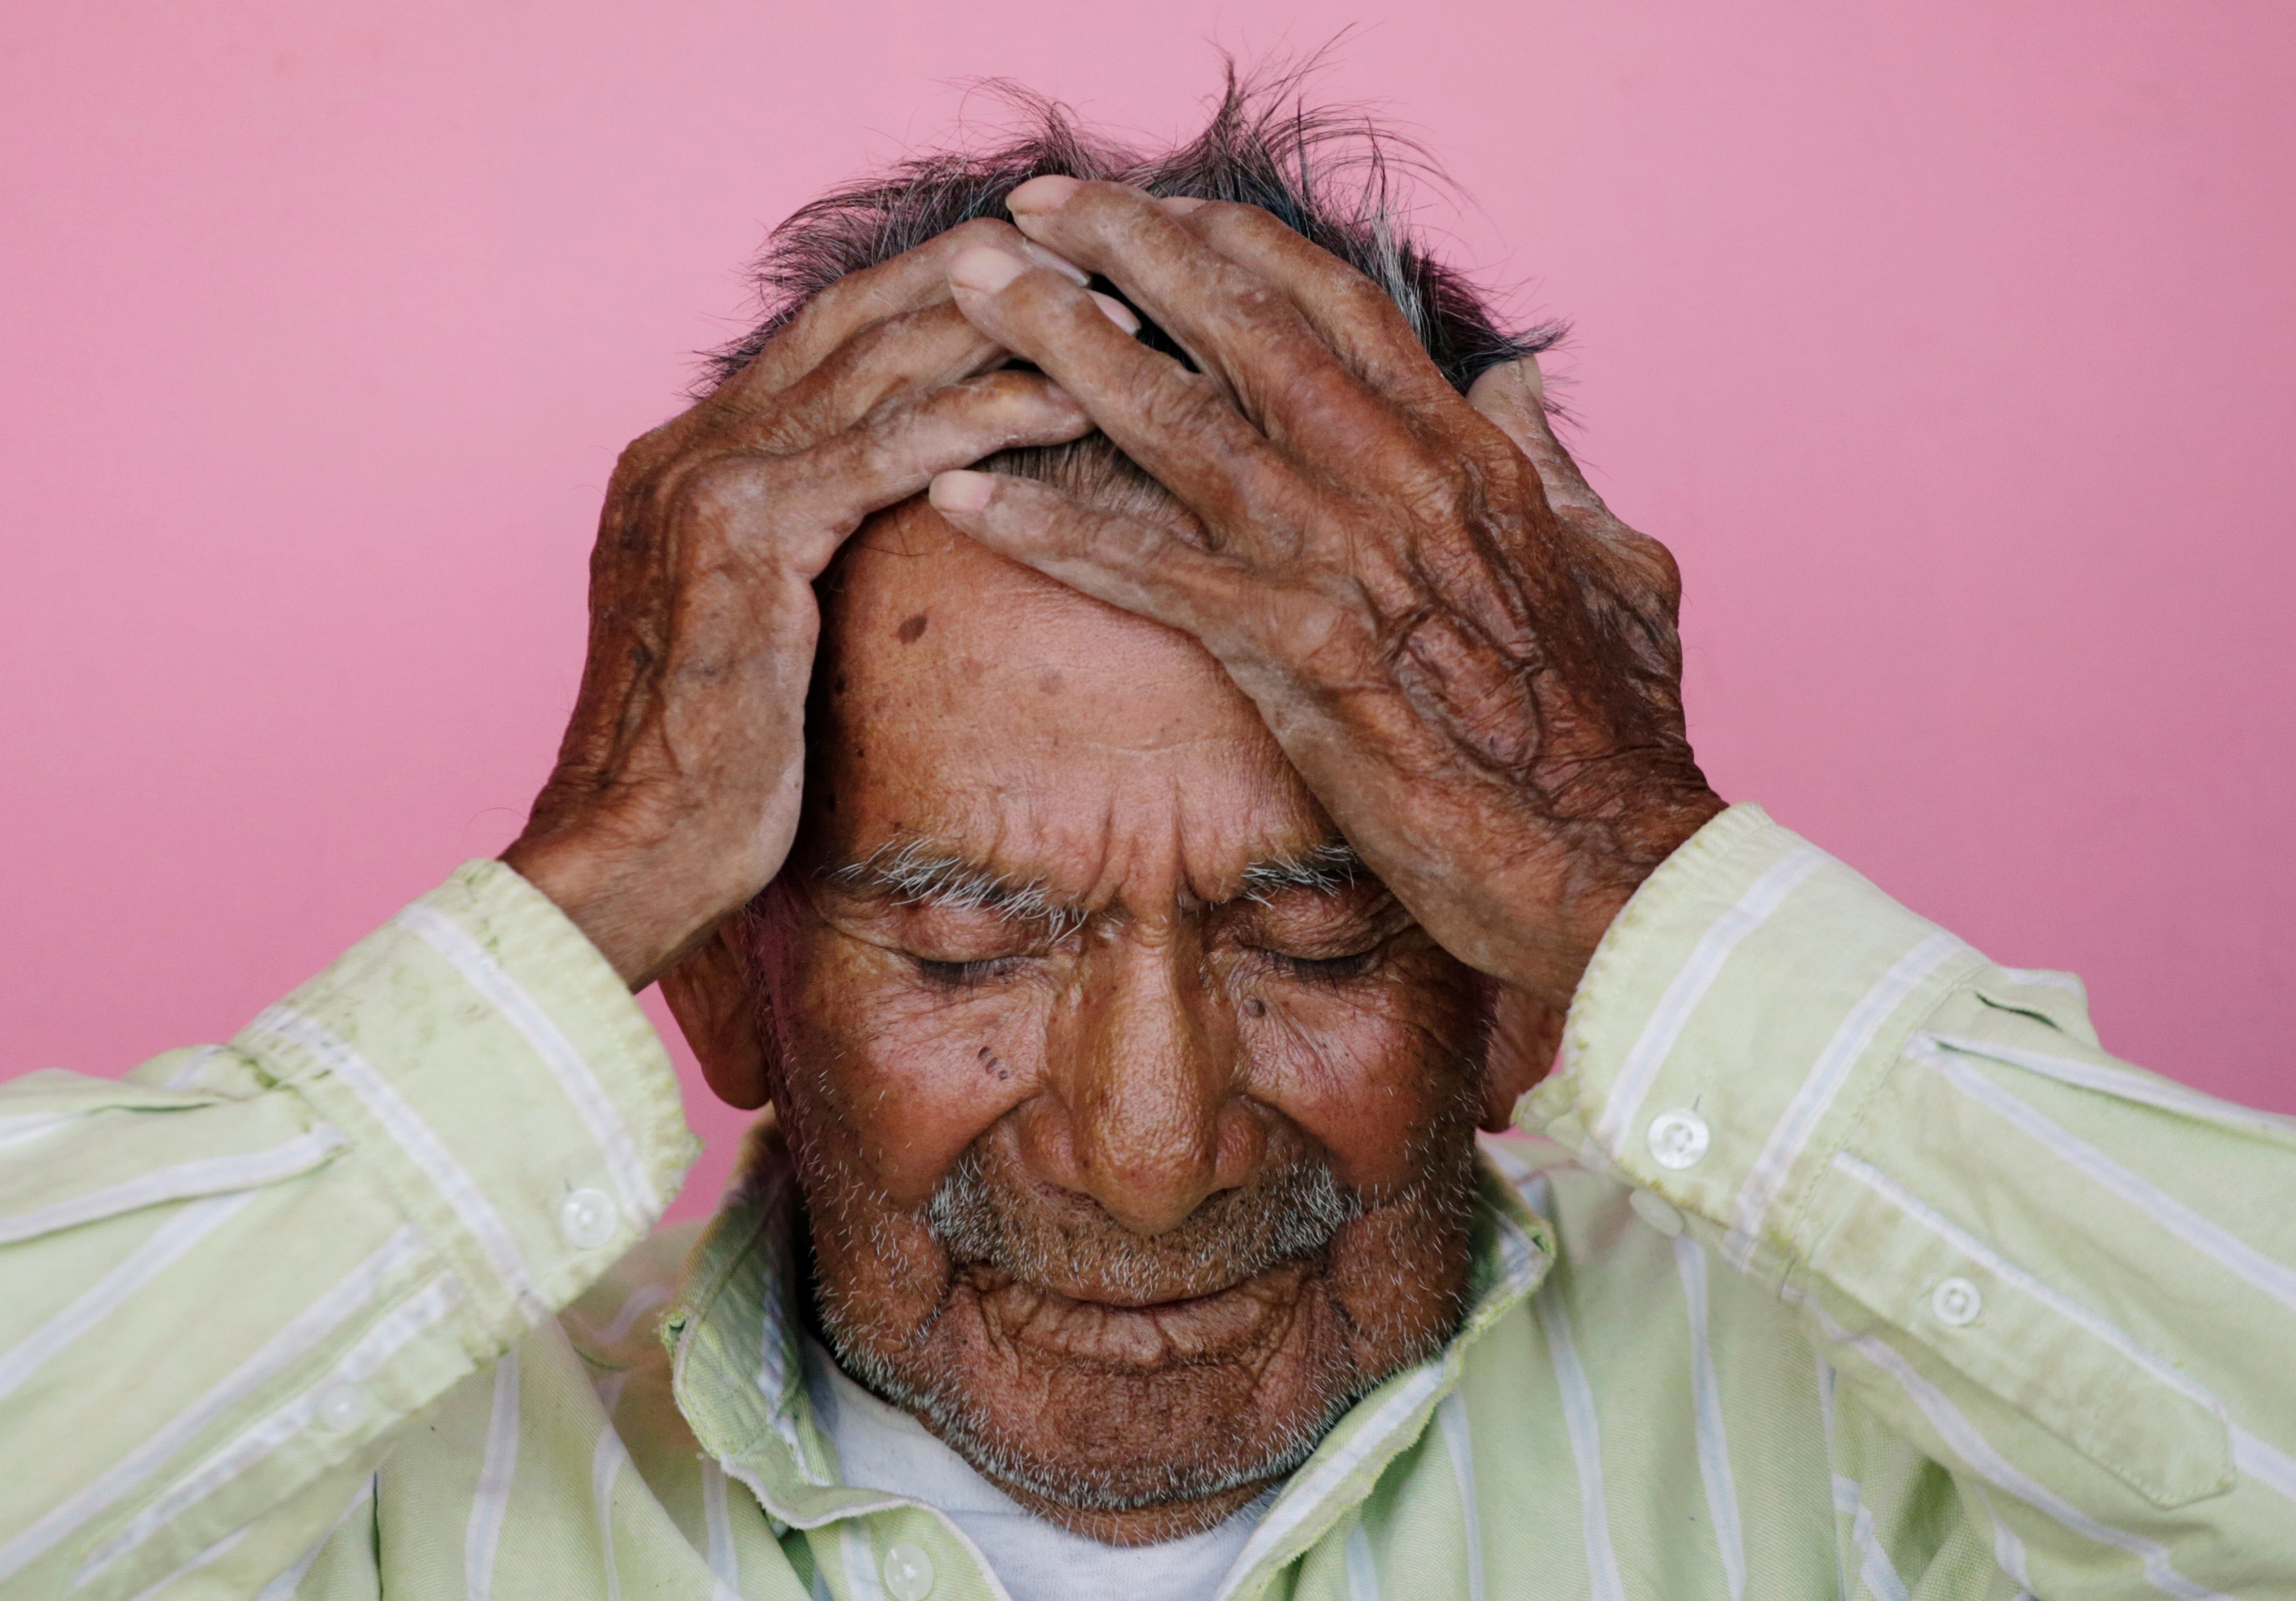 Mexicanos maltratan a sus adultos mayores... y además los discriminan